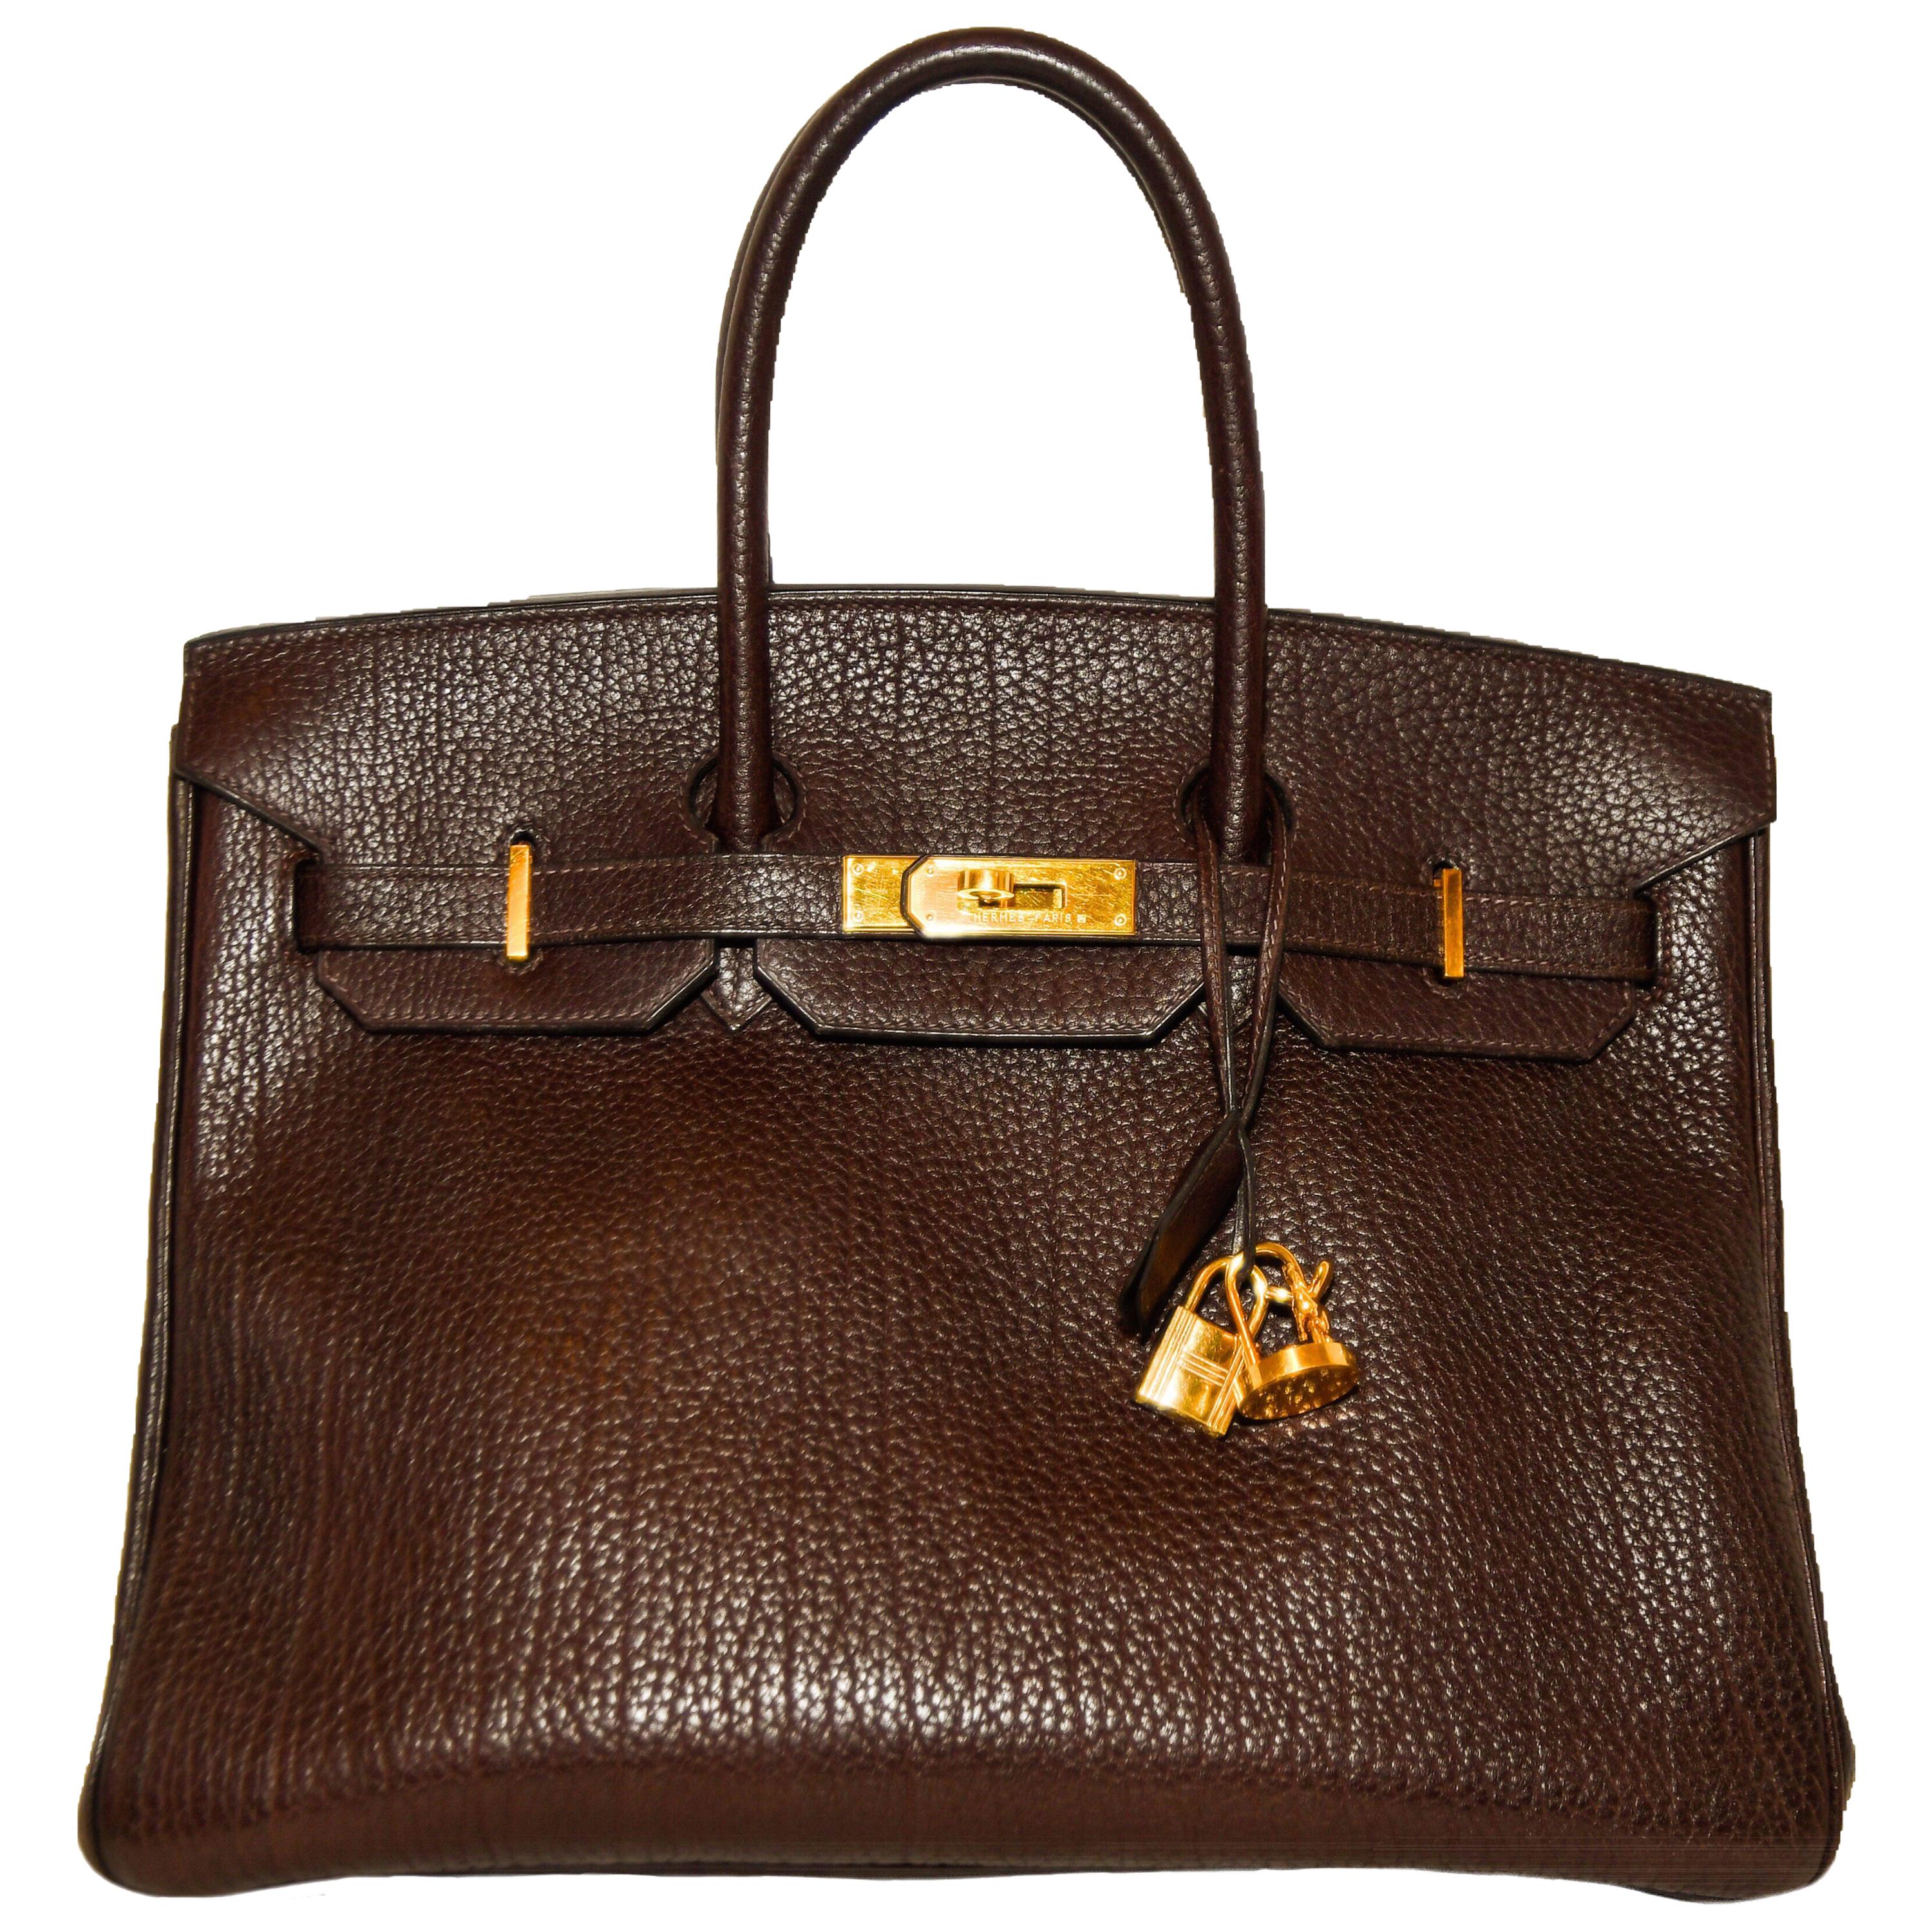 Hermes Brown Togo Leather Birkin 35 Bag